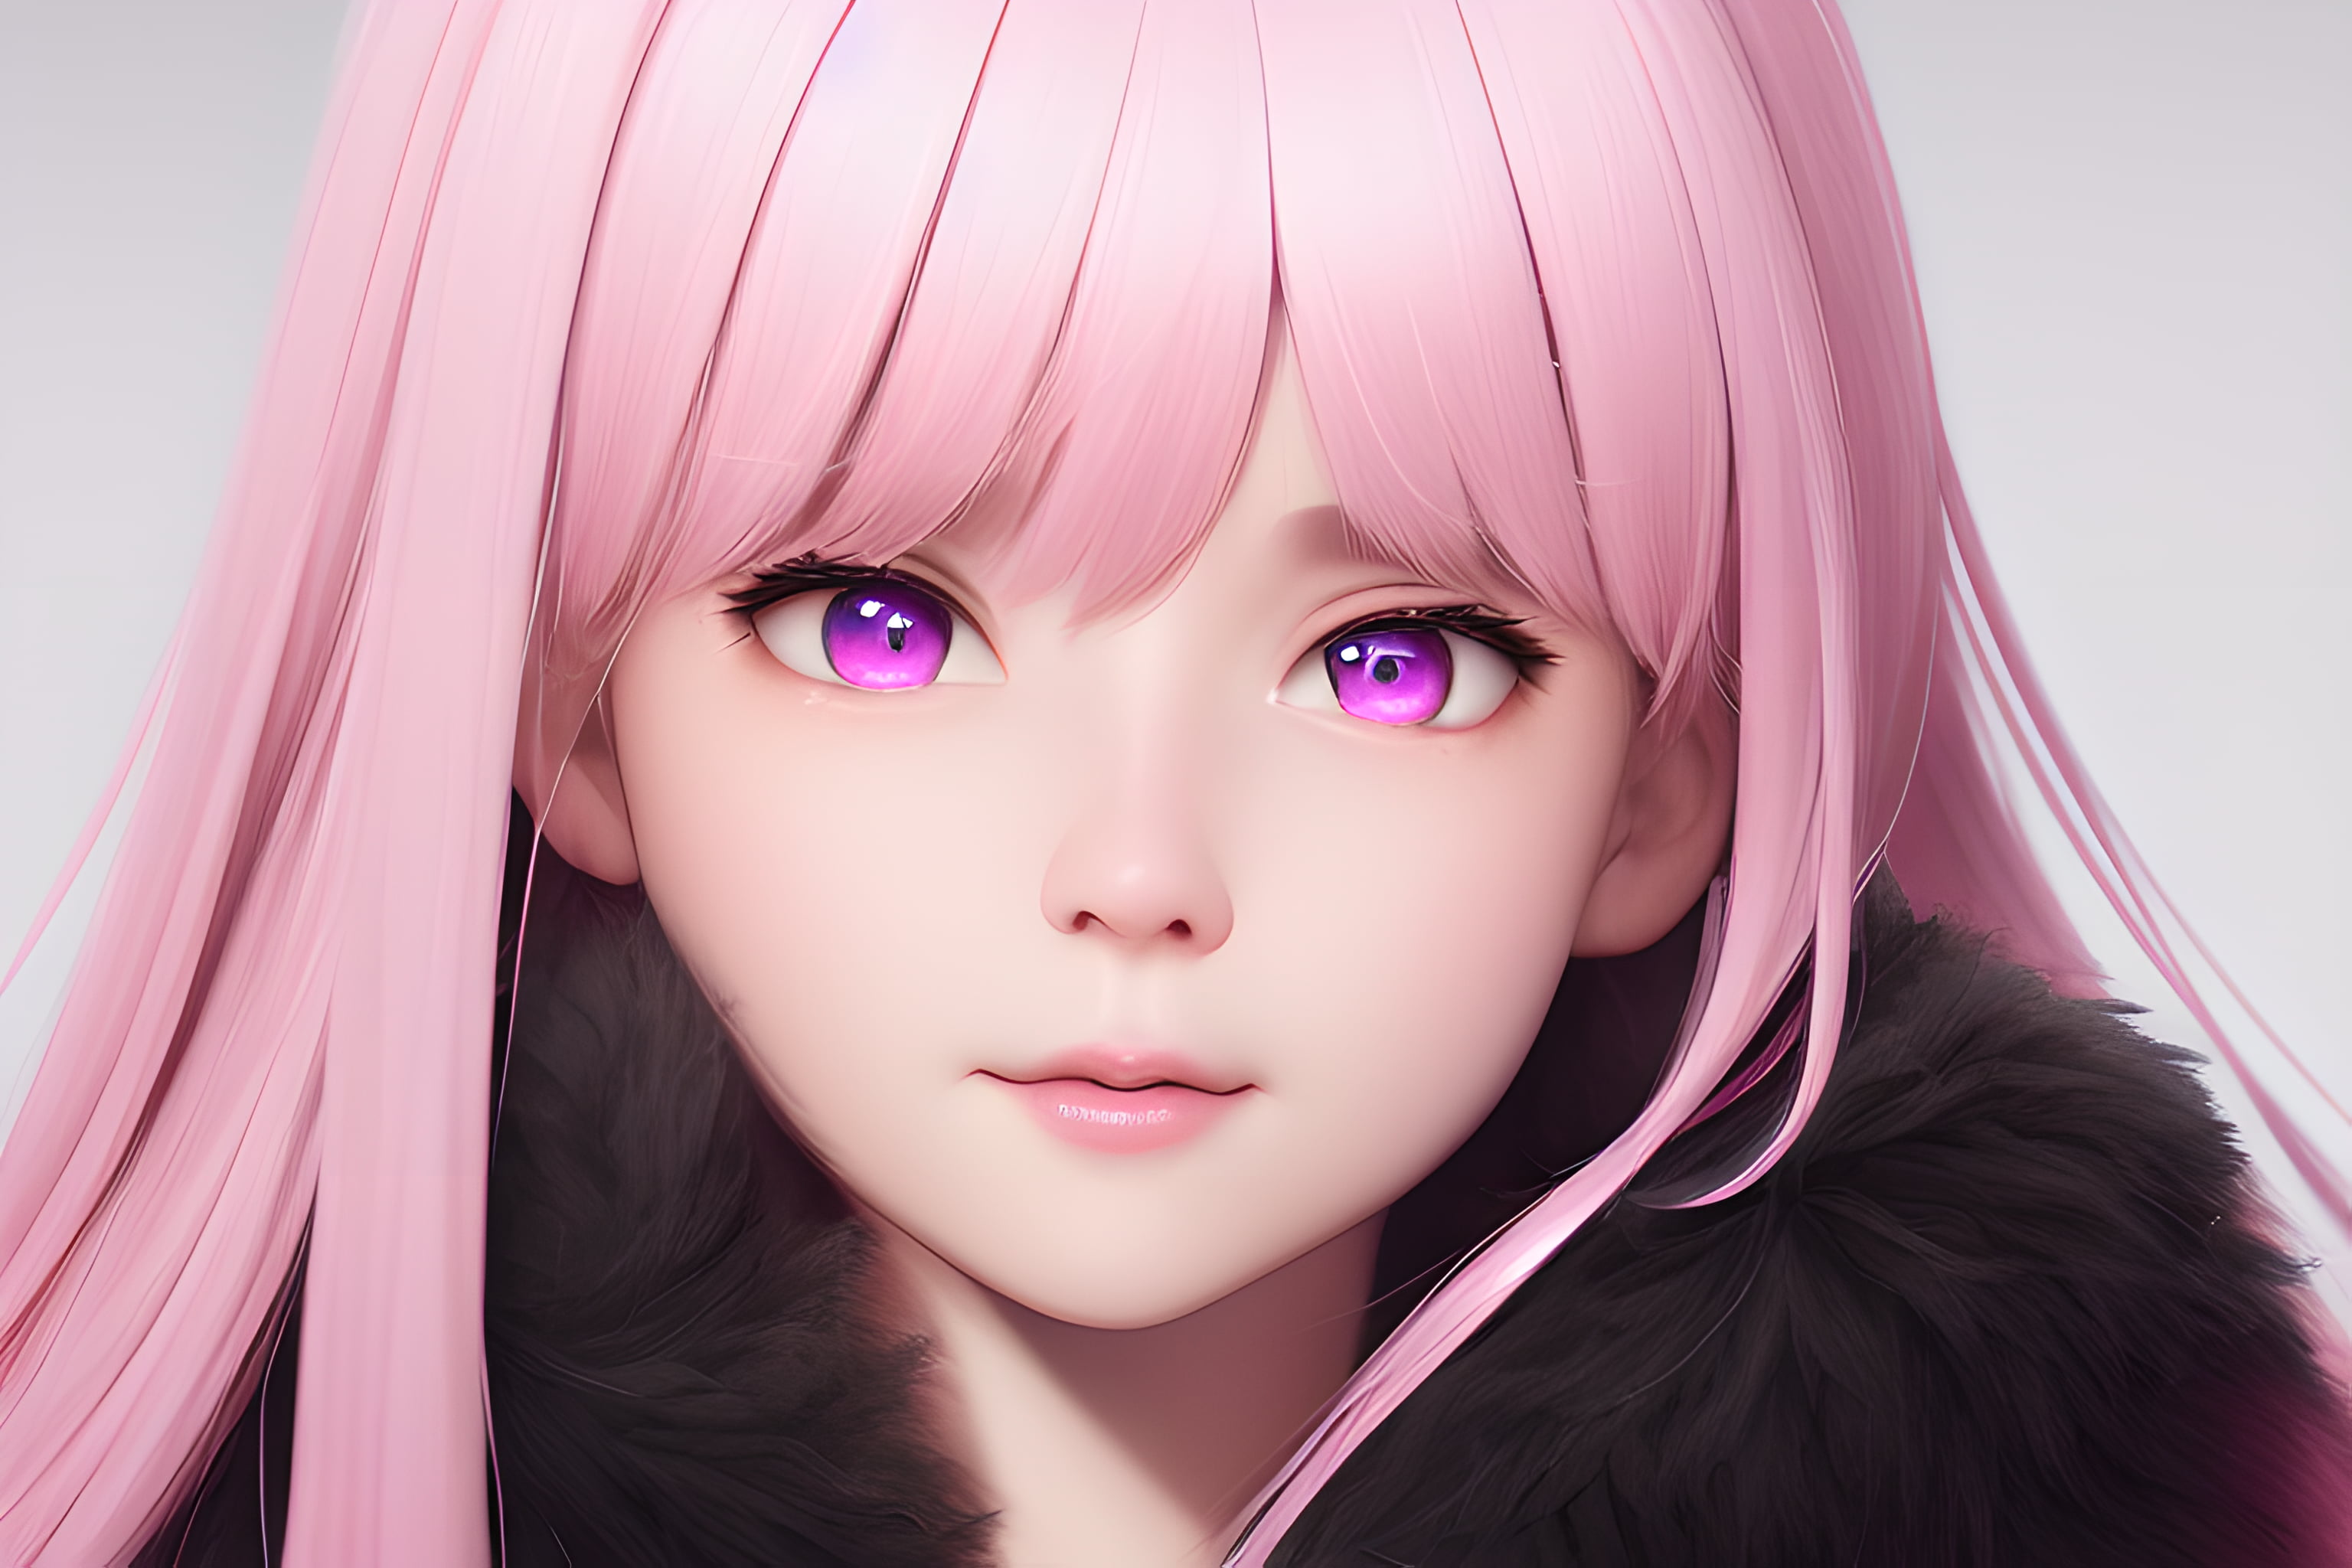 Free download | HD wallpaper: pink hair, anime girls, Sakura (Naruto ...